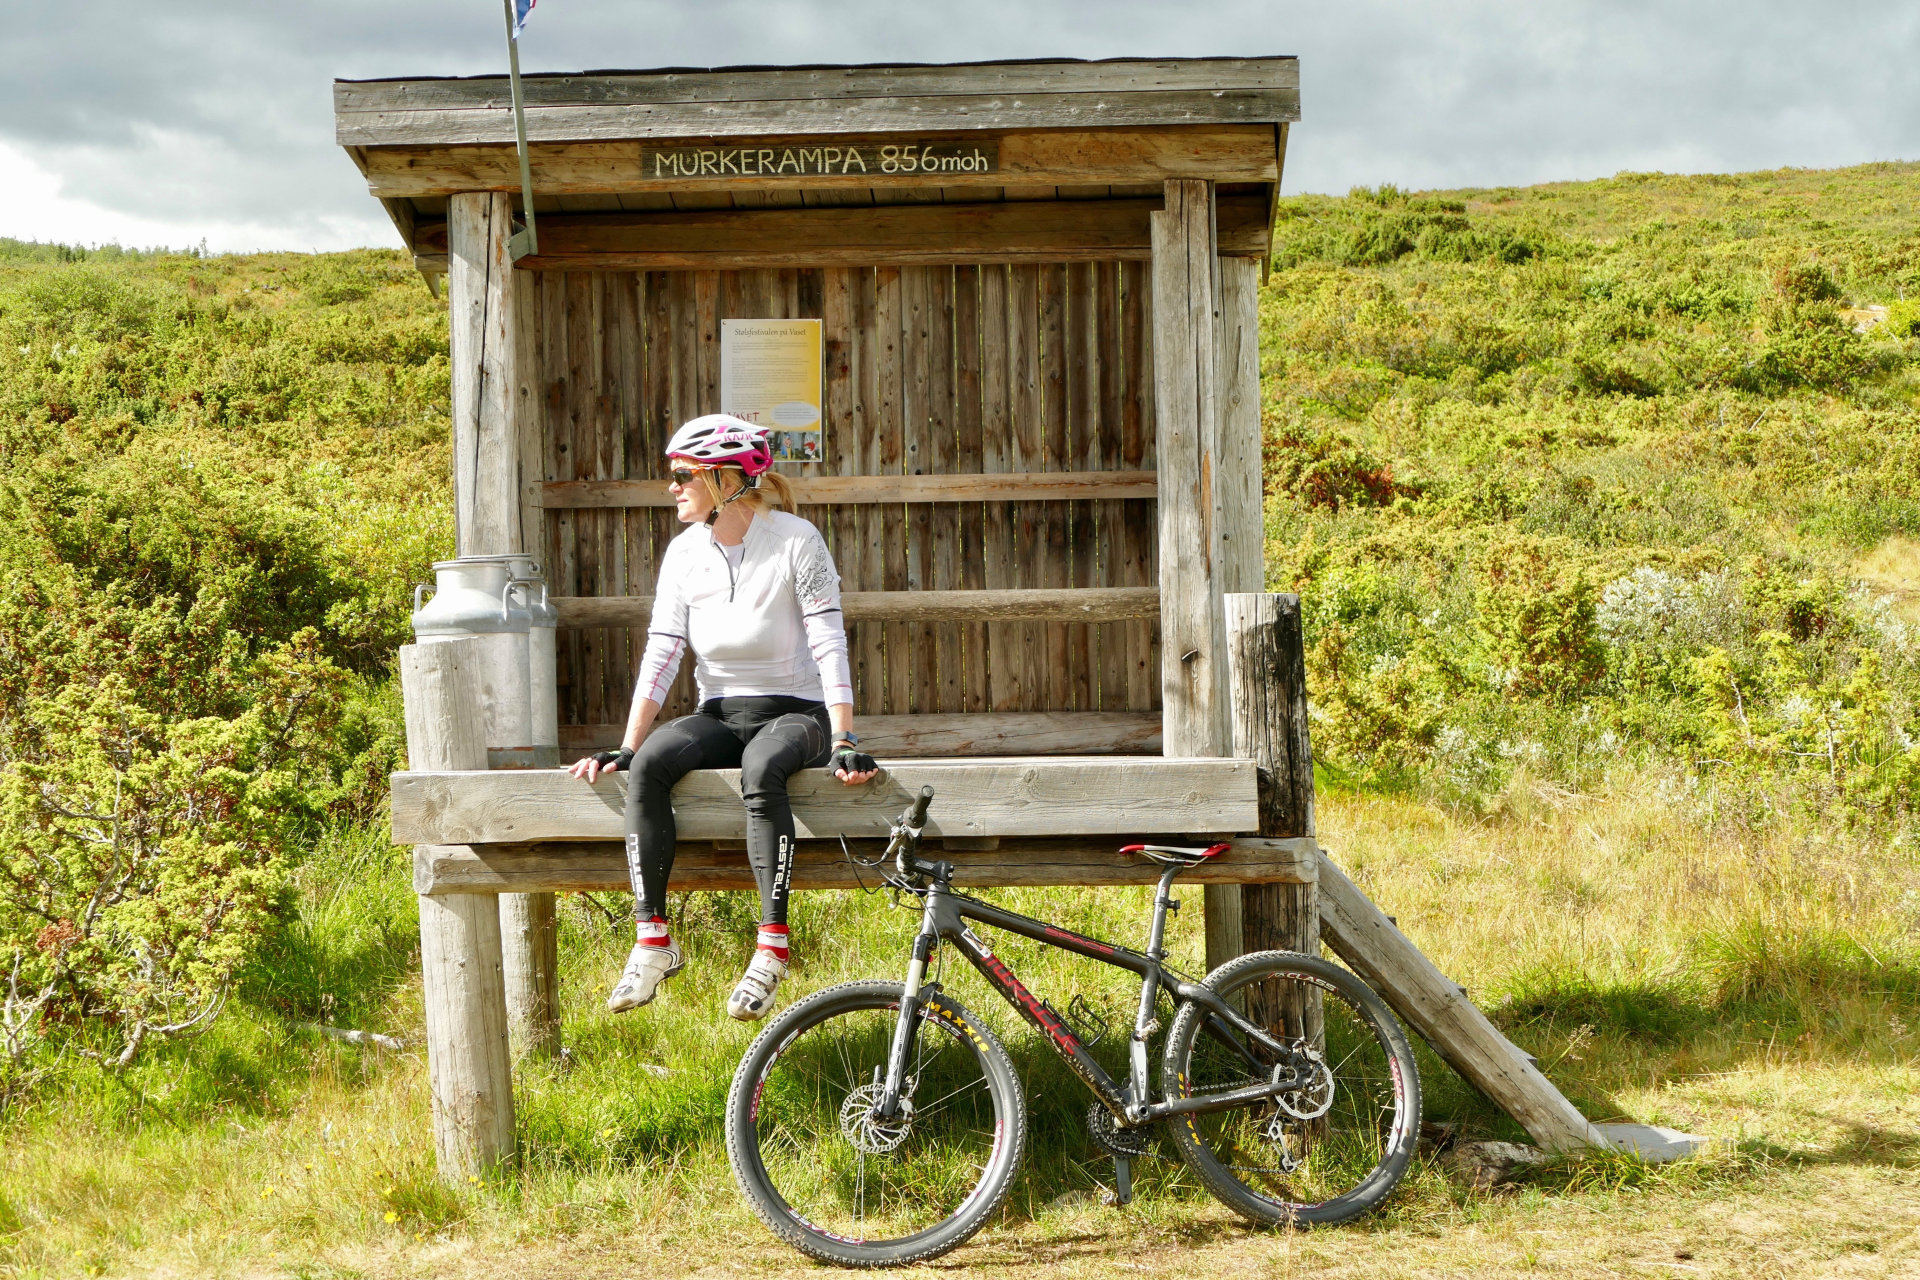 – Her sykler du ikke i kø, sier sykkelglade Birgit Haugen, som håper å inspirere andre til å sykle mer i området.